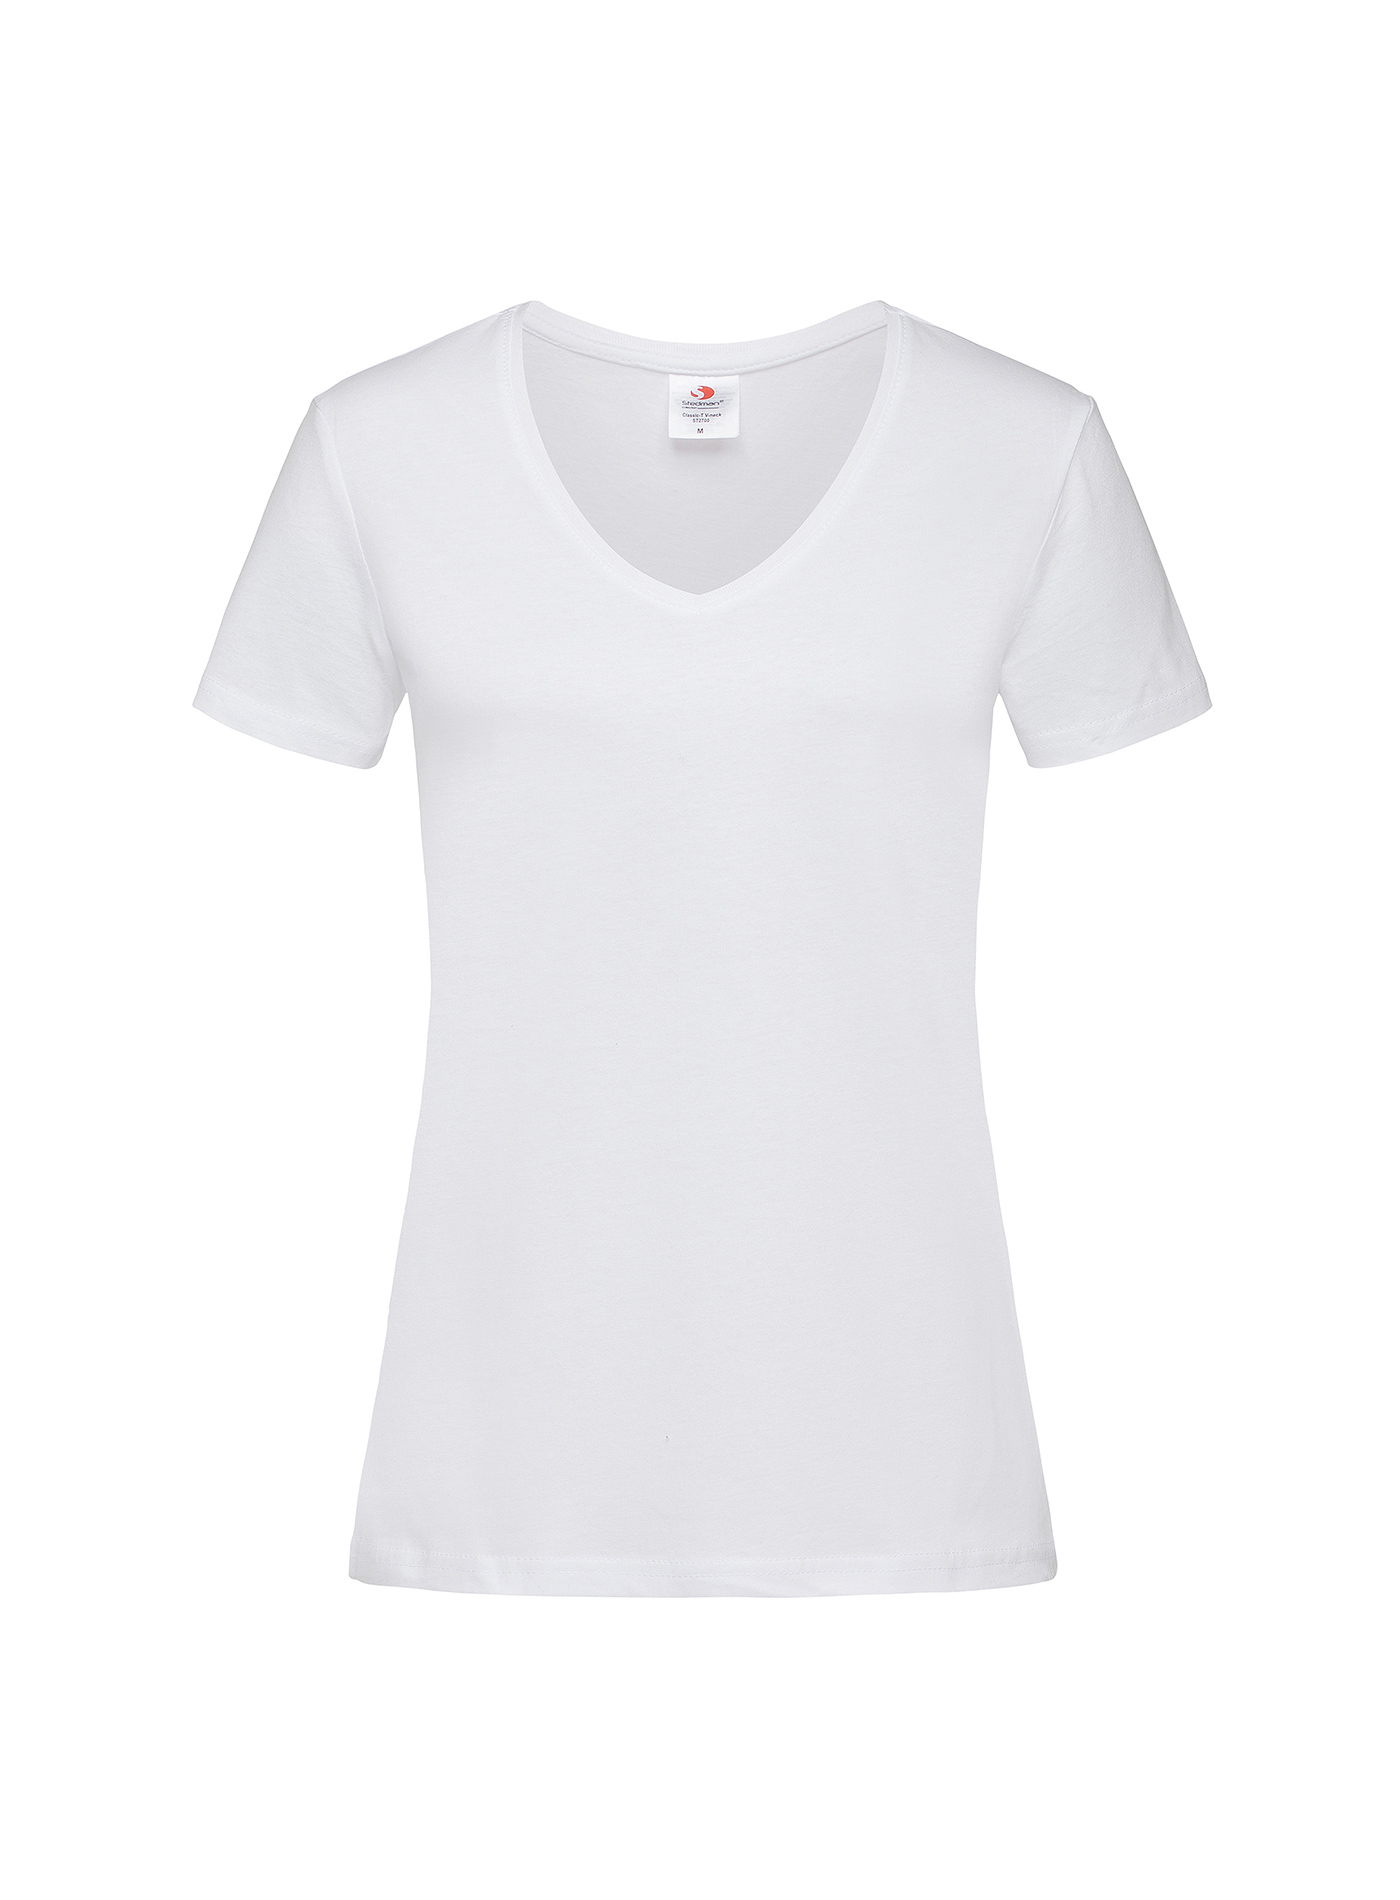 Dámské tričko s V-výstřihem Stedman - Bílá L